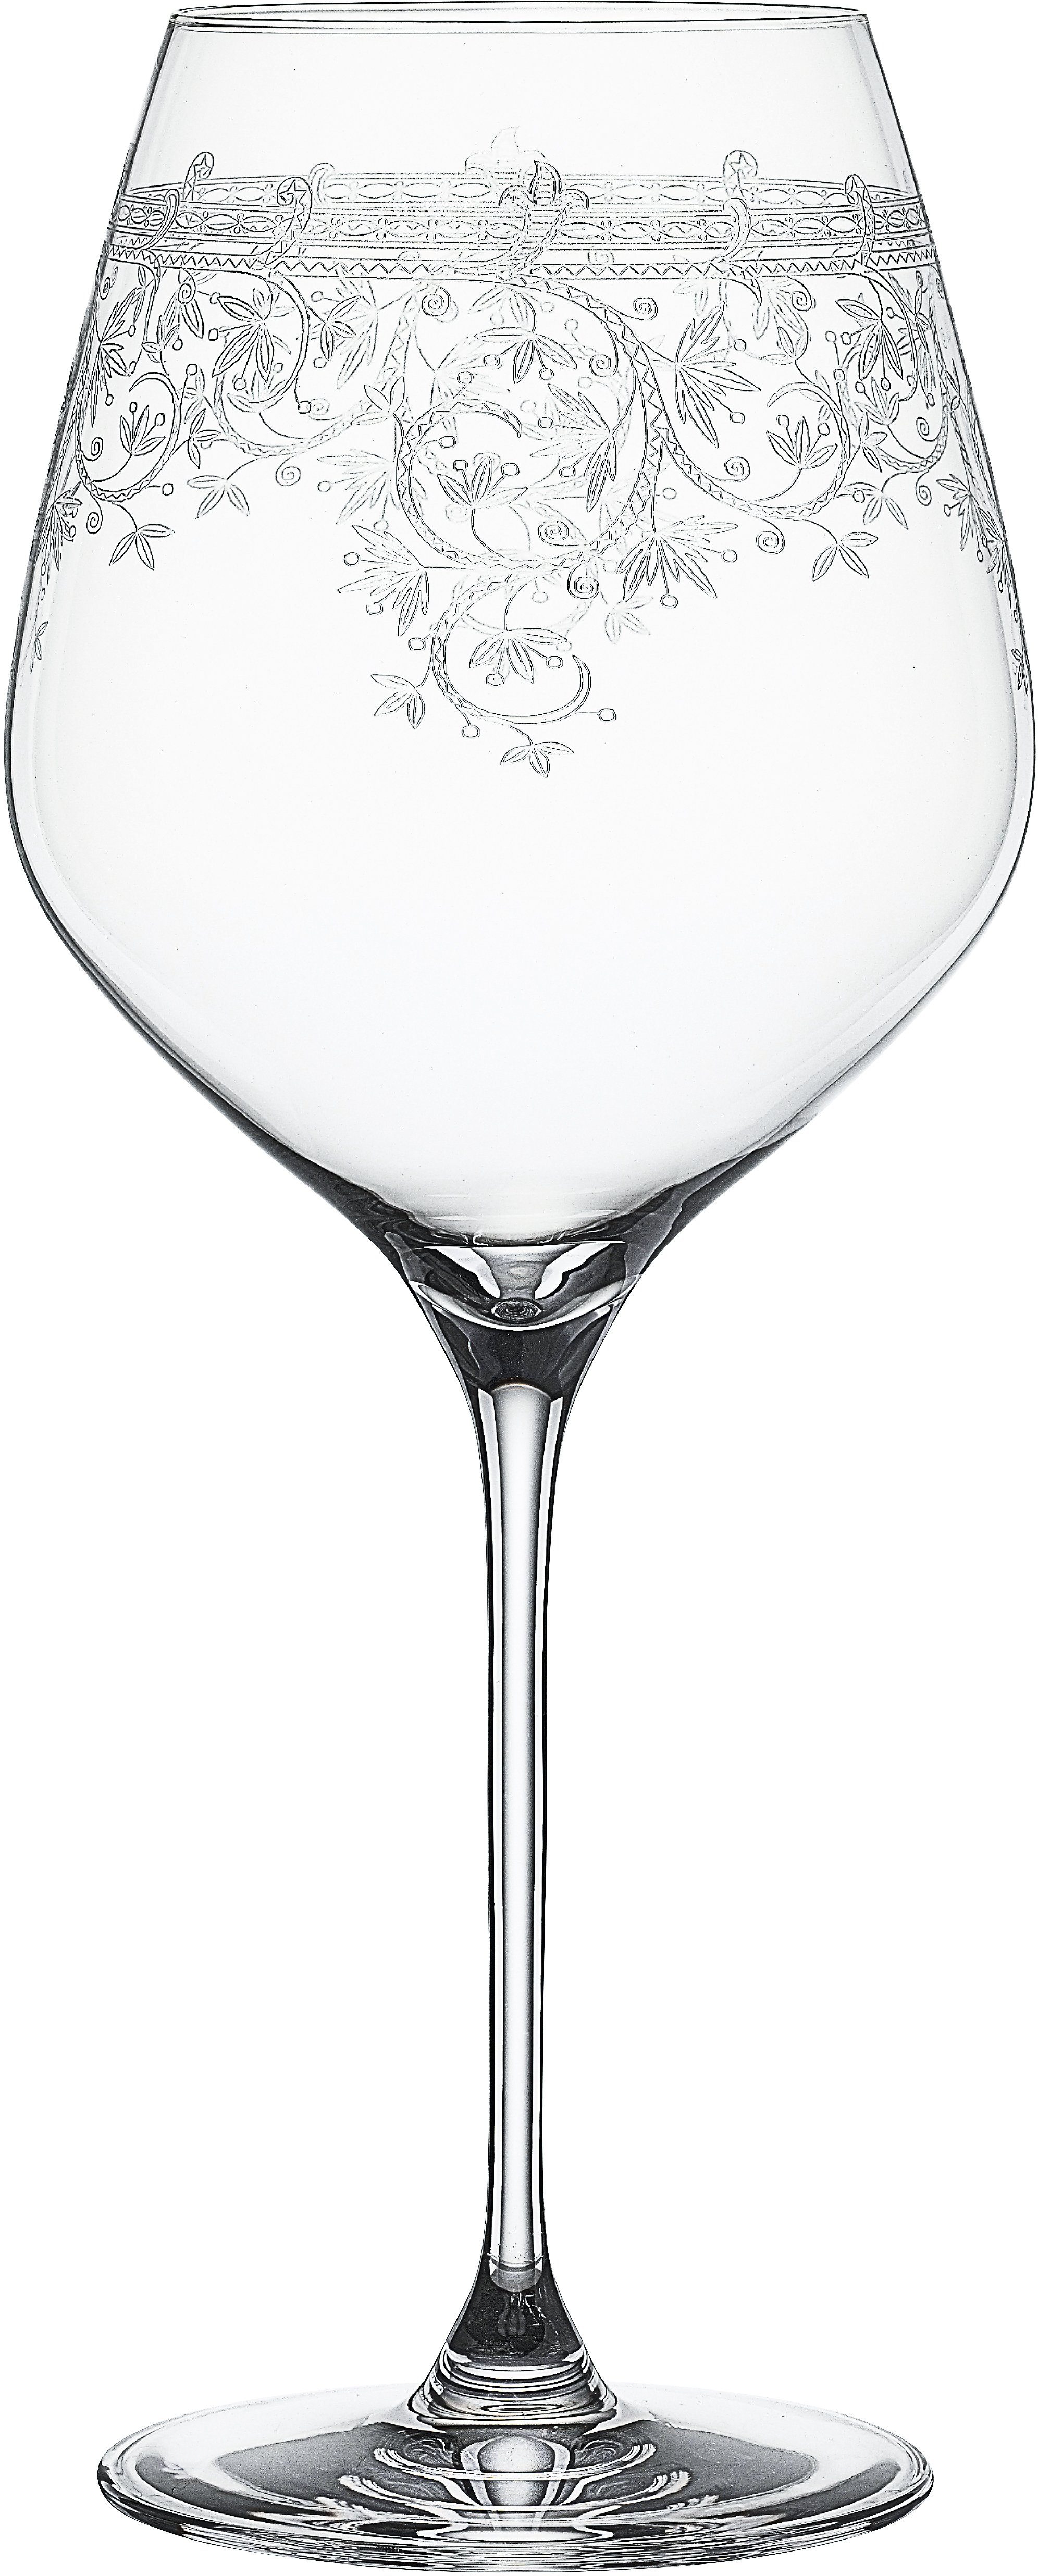 SPIEGELAU Rotweinglas »Arabesque«, Kristallglas, (Burgunderglas), 840 ml,  6-teilig online kaufen | OTTO